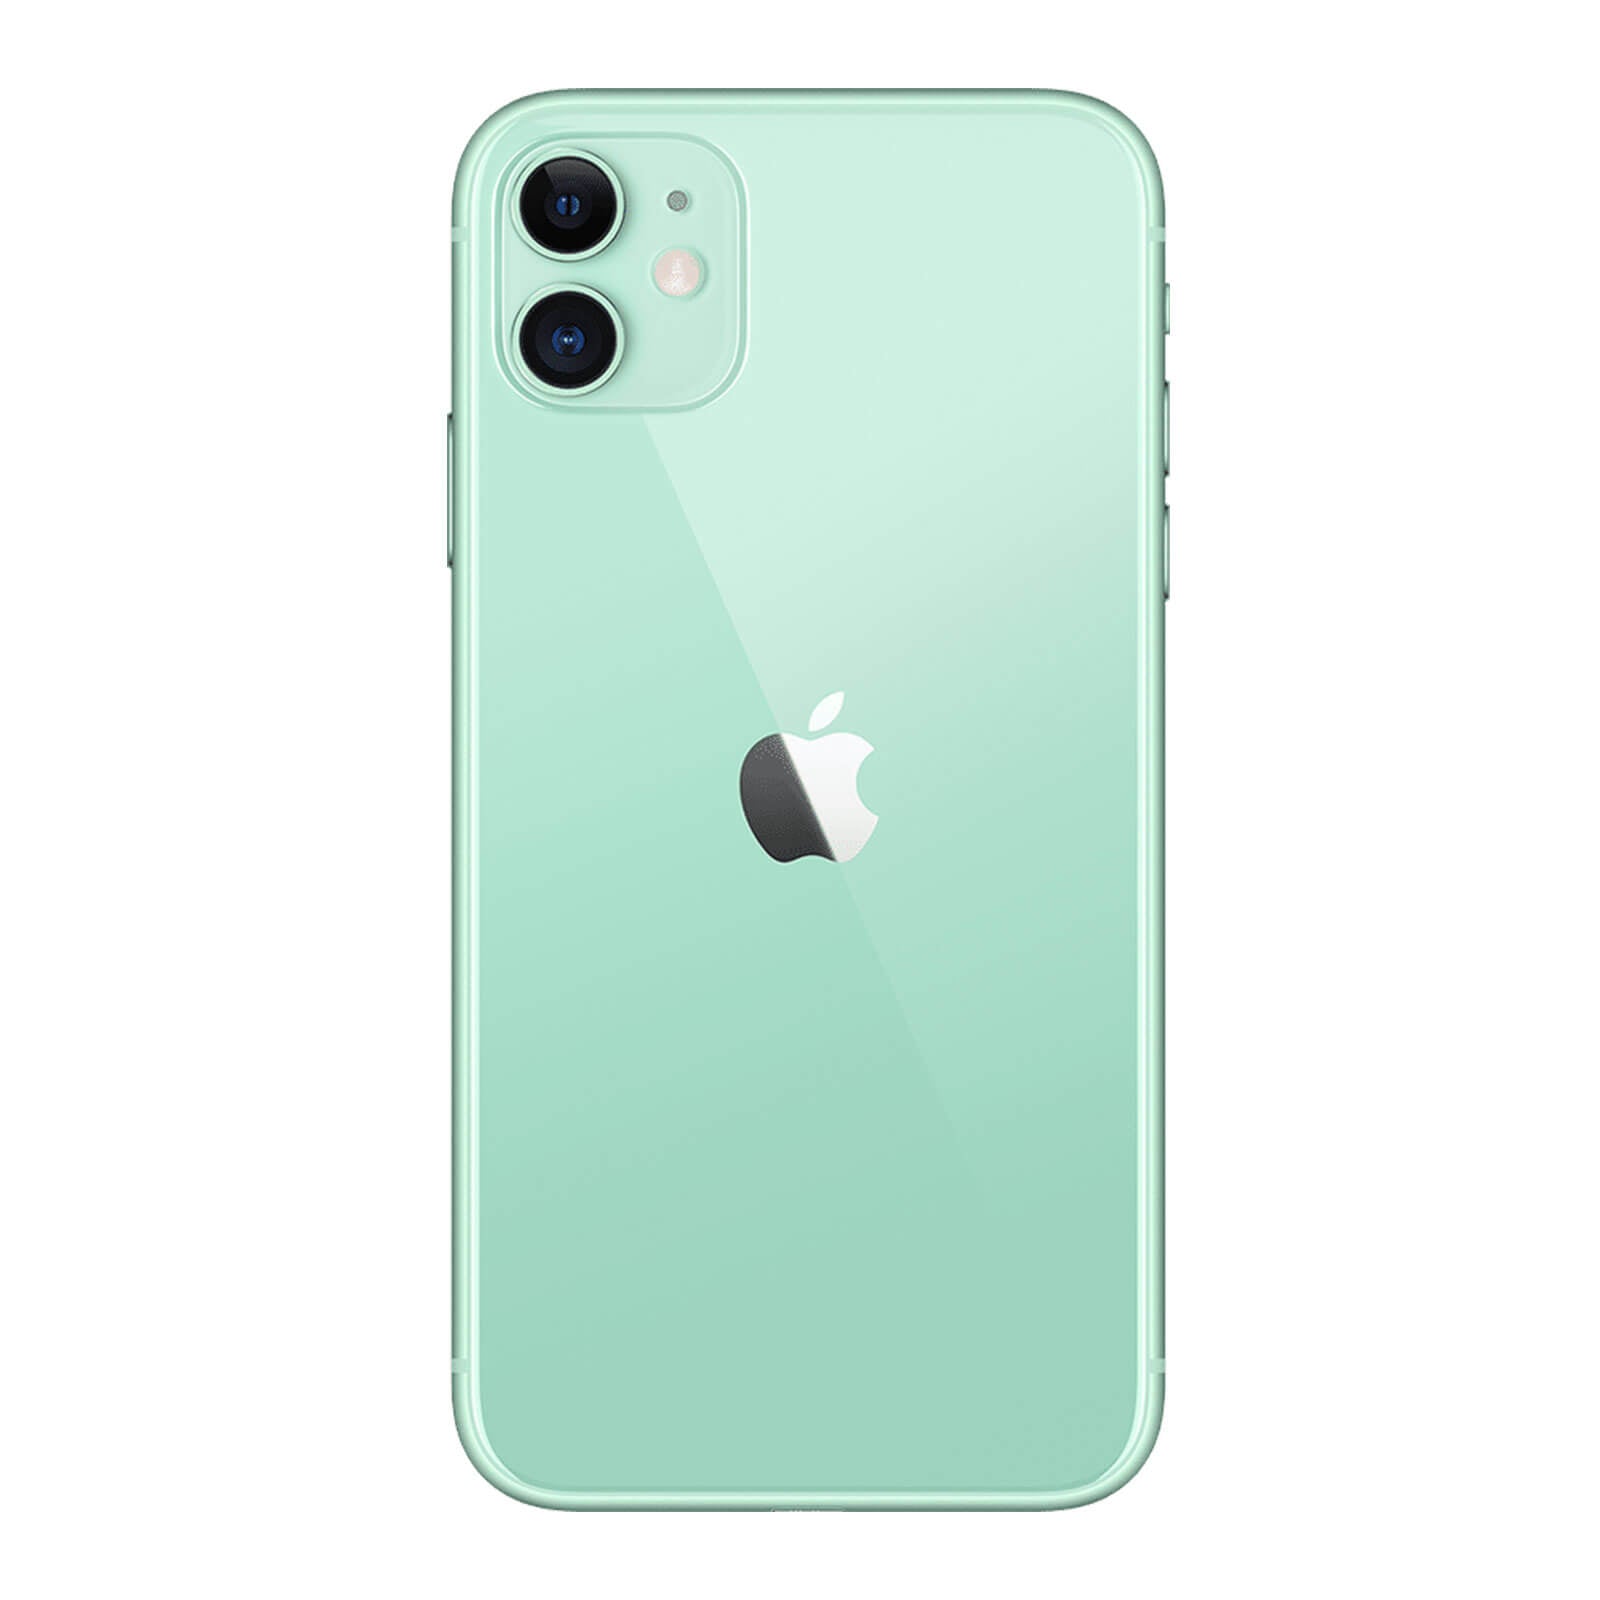 iPhone 11 128 Go - Vert - Débloqué - Très Bon État